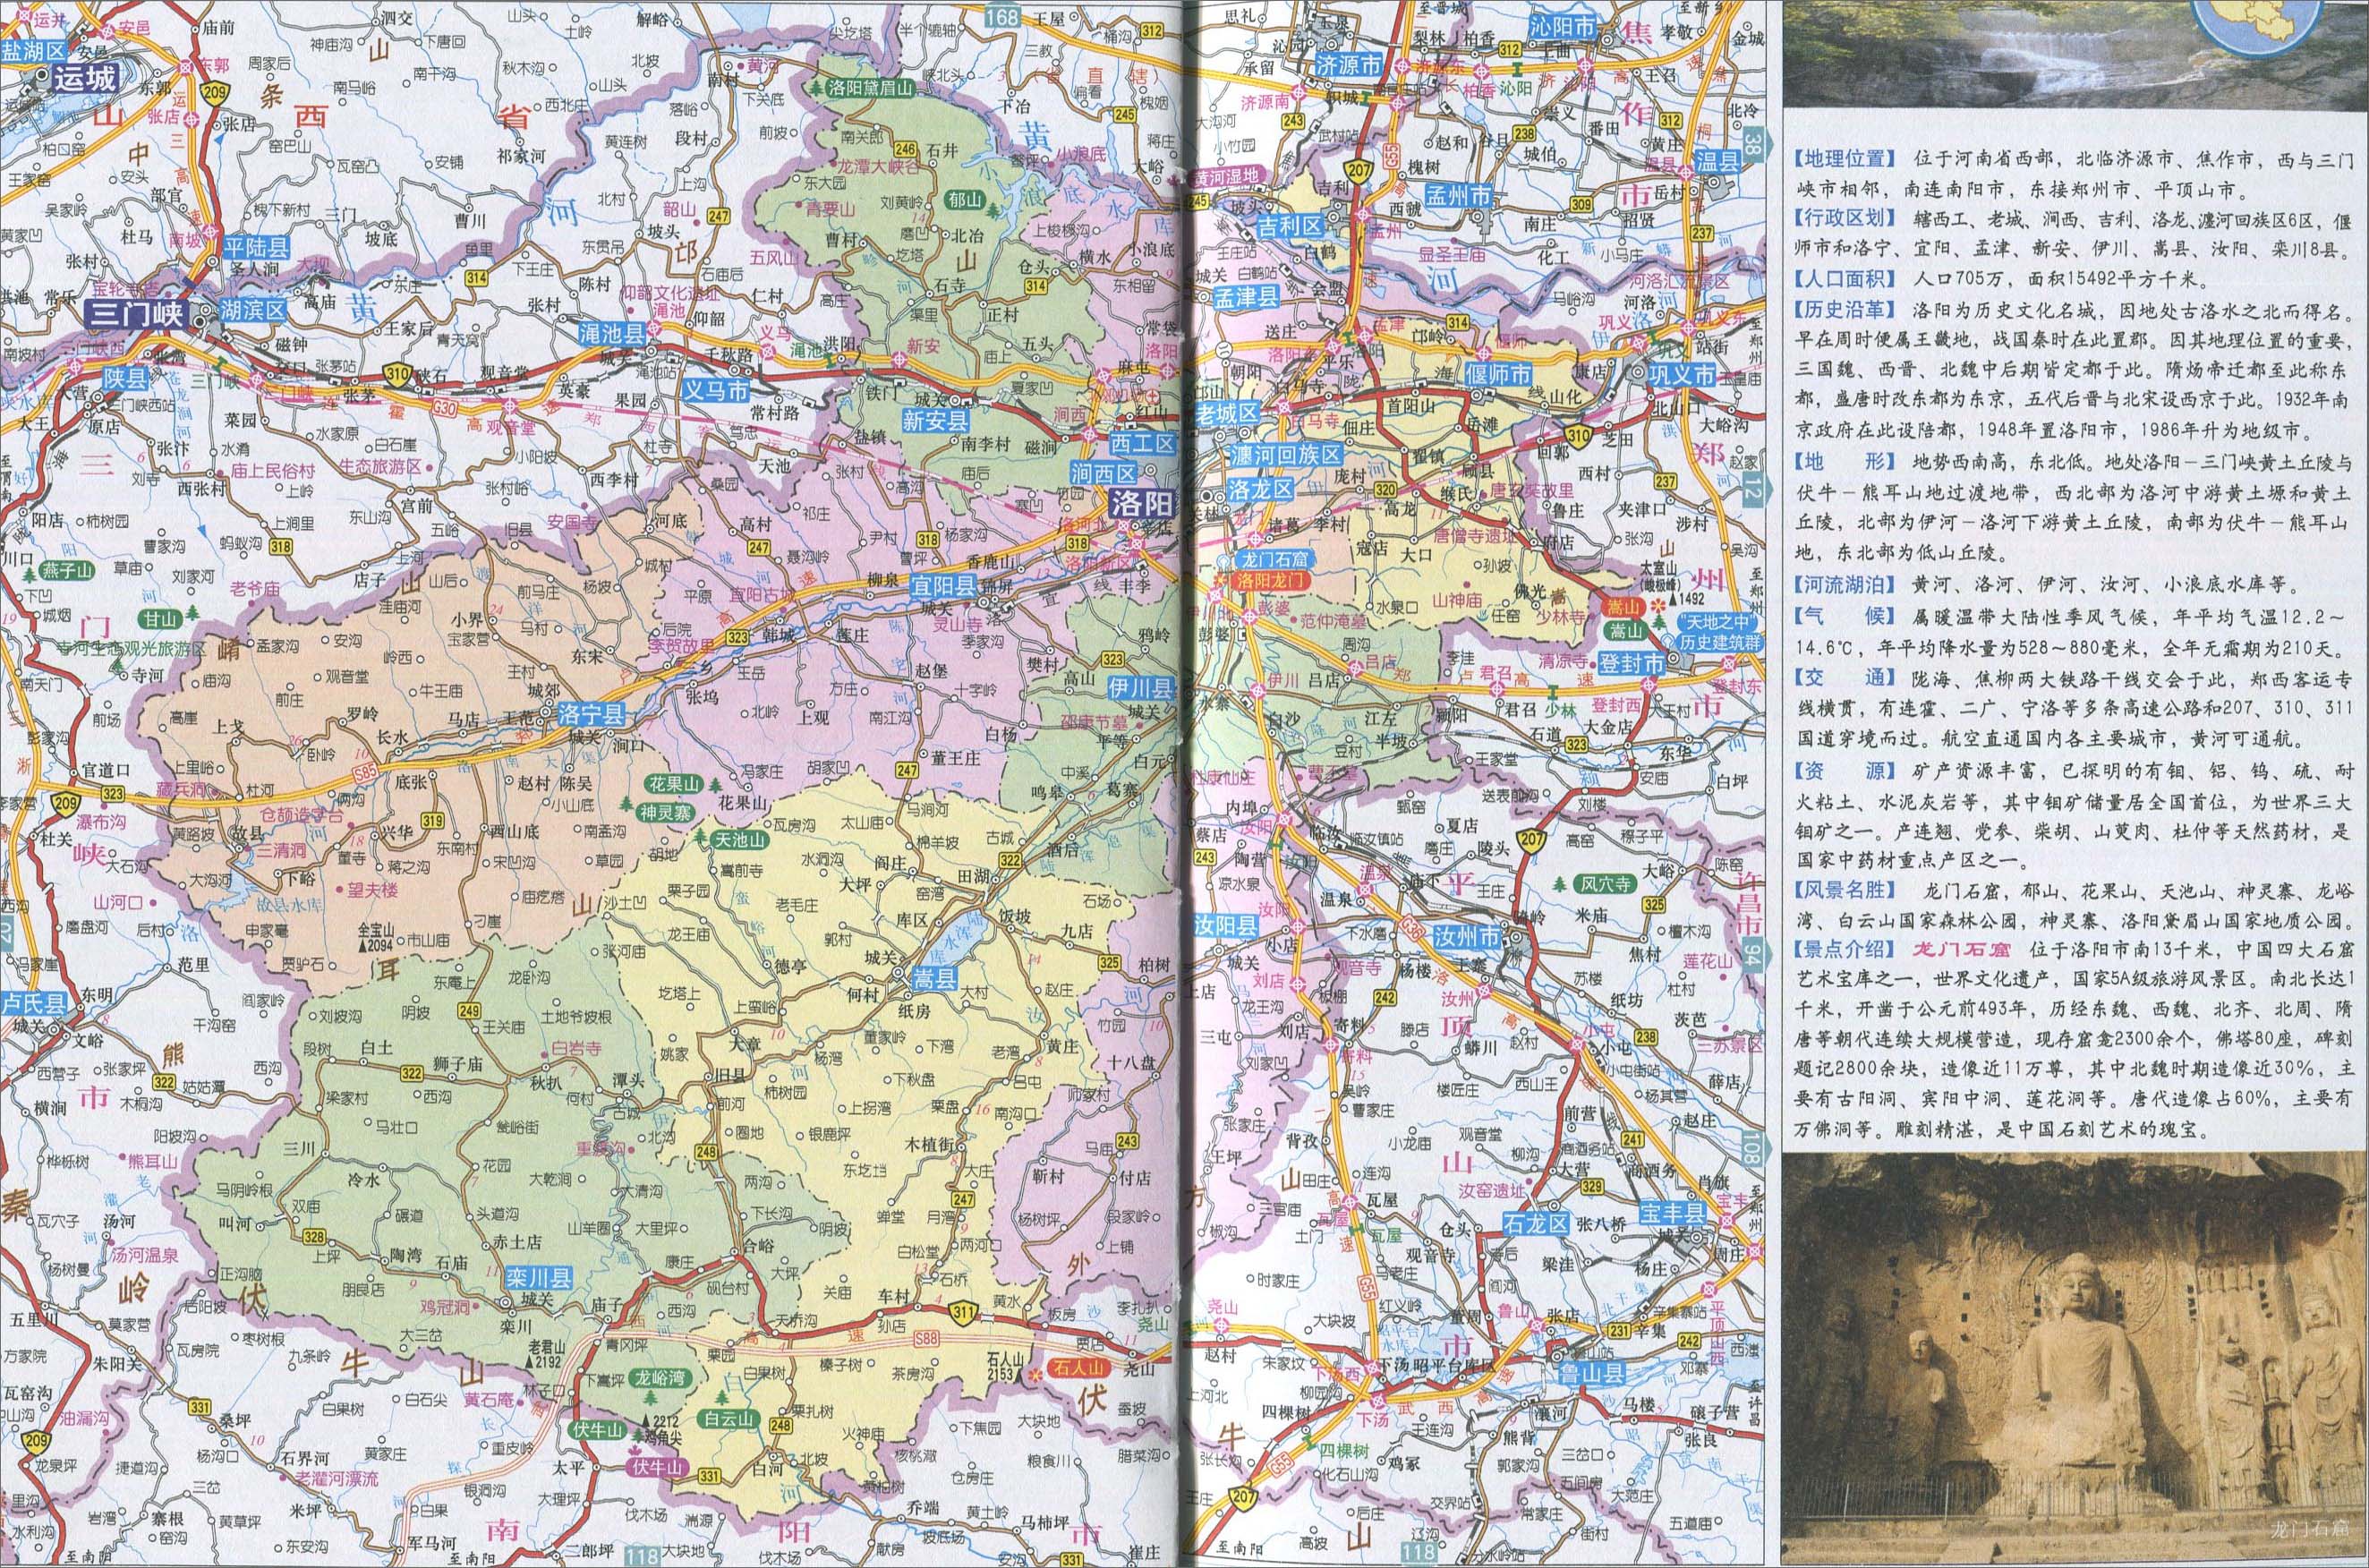 上一幅地图: 洛阳城区地图 | 洛阳市 | 下一幅地图: 汝阳县地图图片